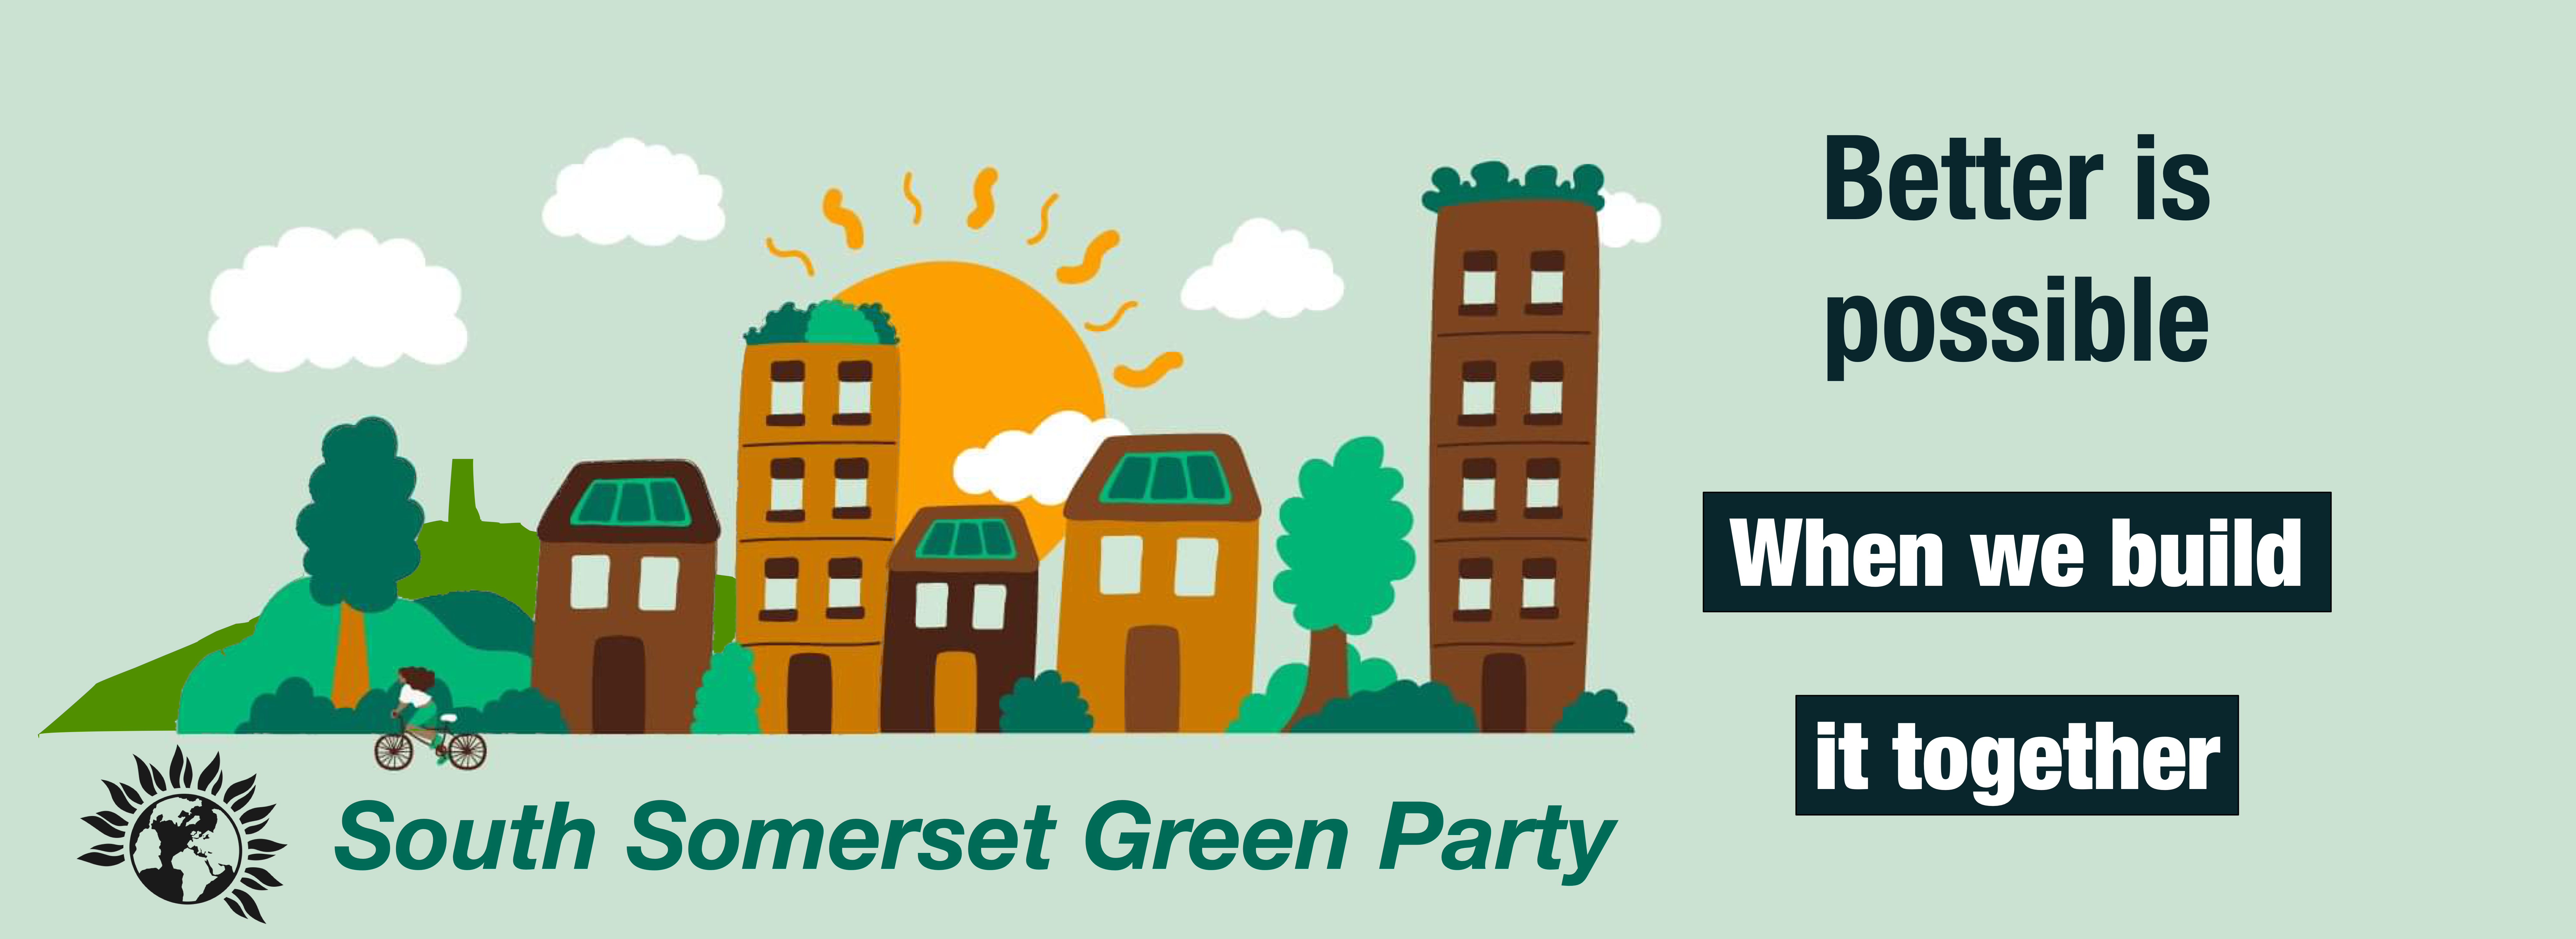 Green Party Better Header